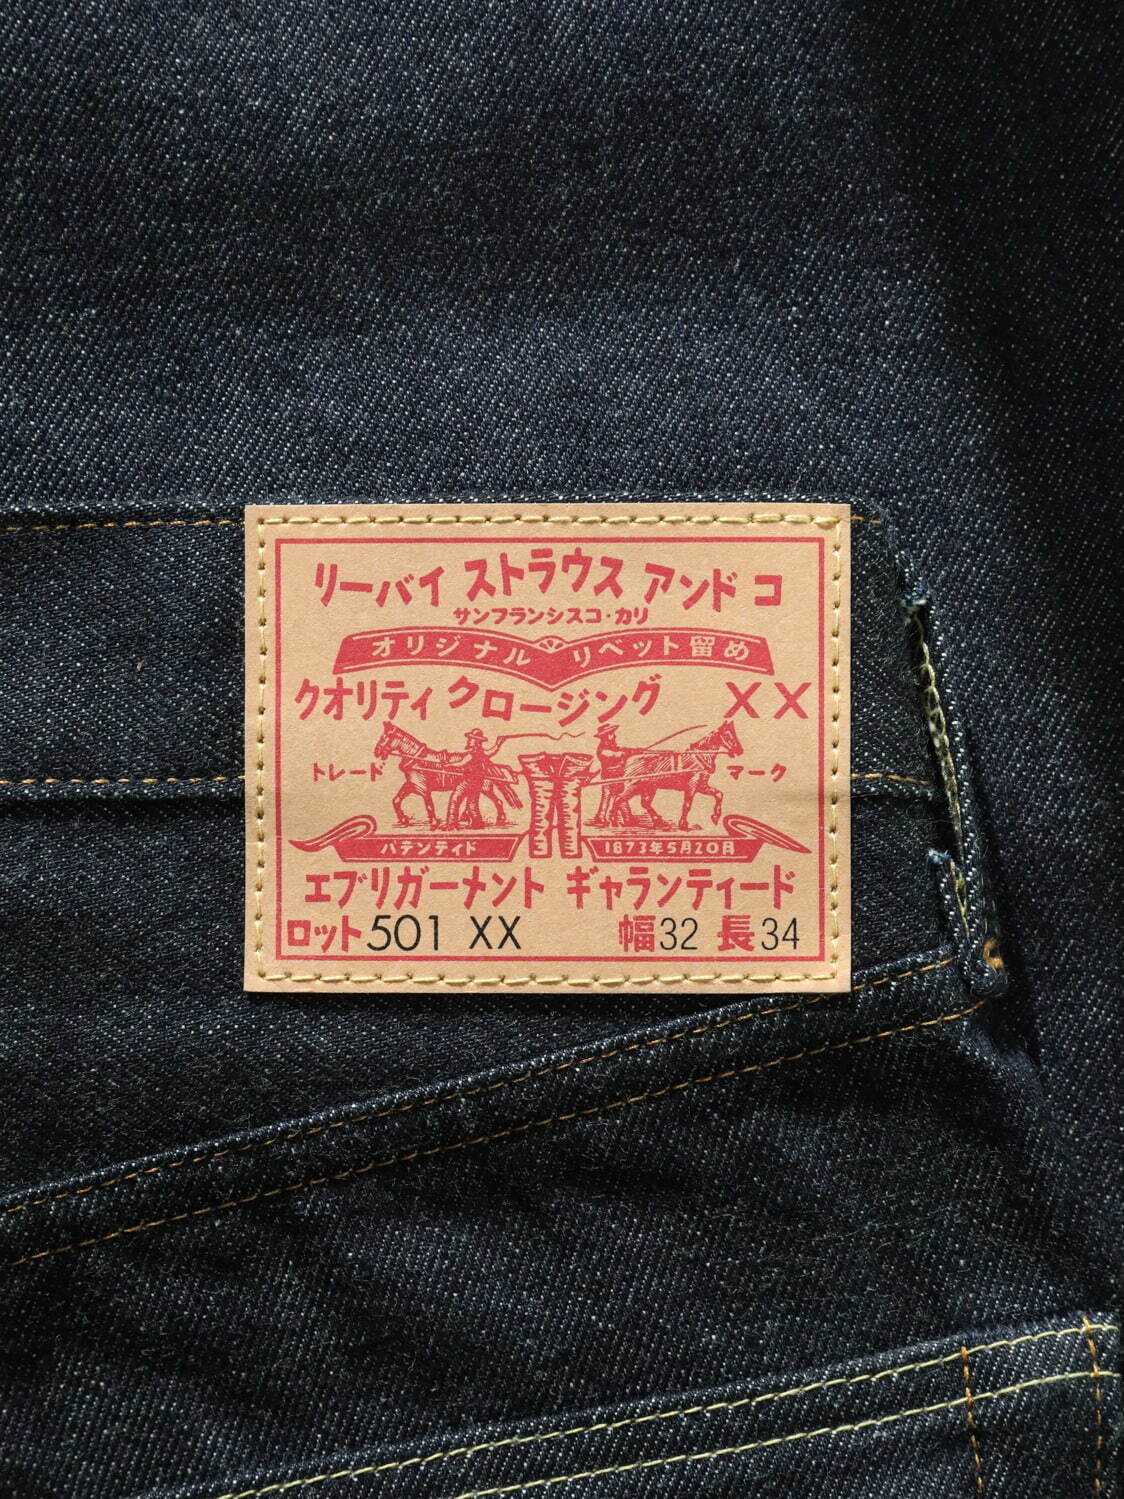 新品未開封 LEVI’S 1947 JAPAN カタカナ　501 xx w33